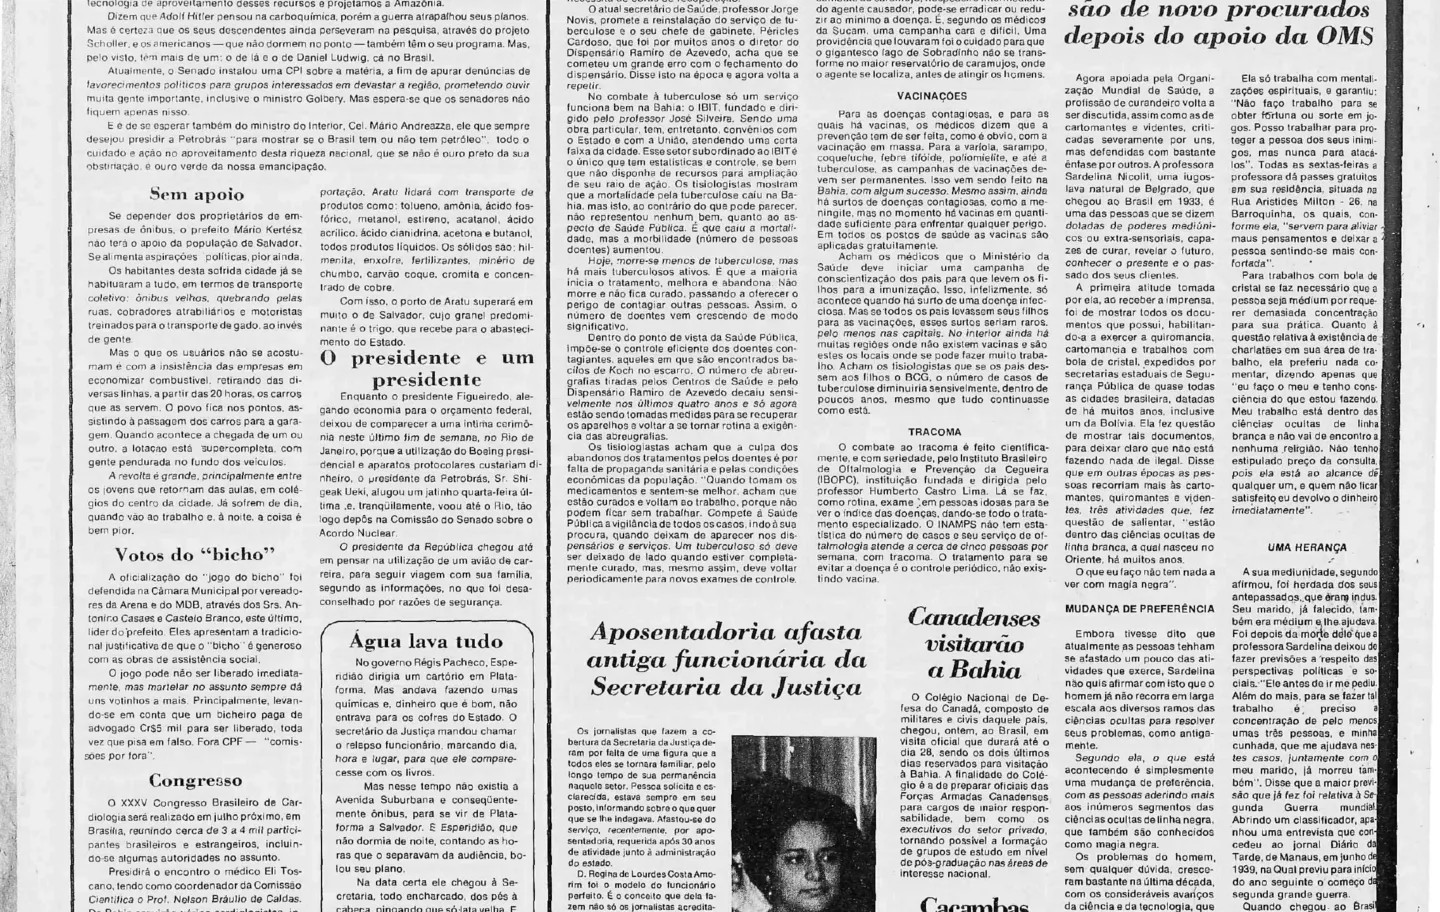 Edição do Jornal A TARDE de 23 de abril de 1979